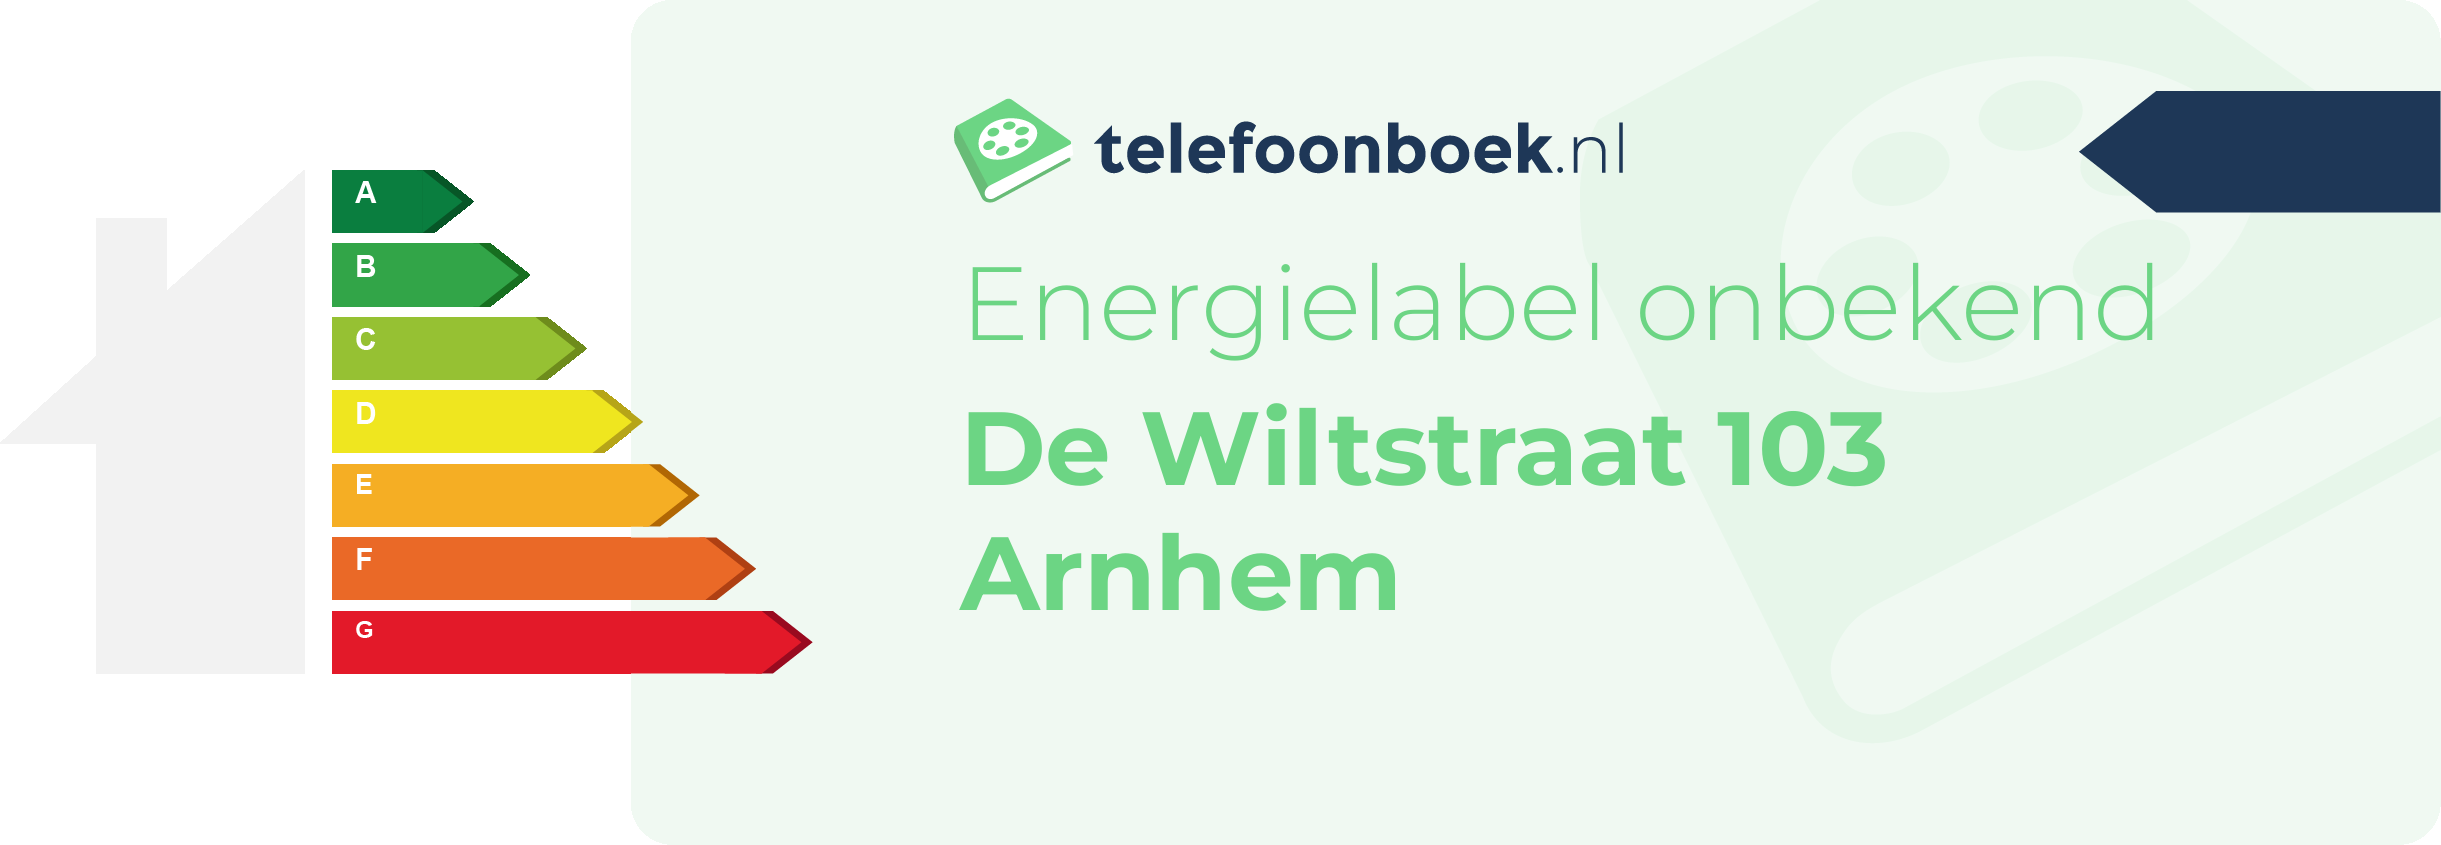 Energielabel De Wiltstraat 103 Arnhem